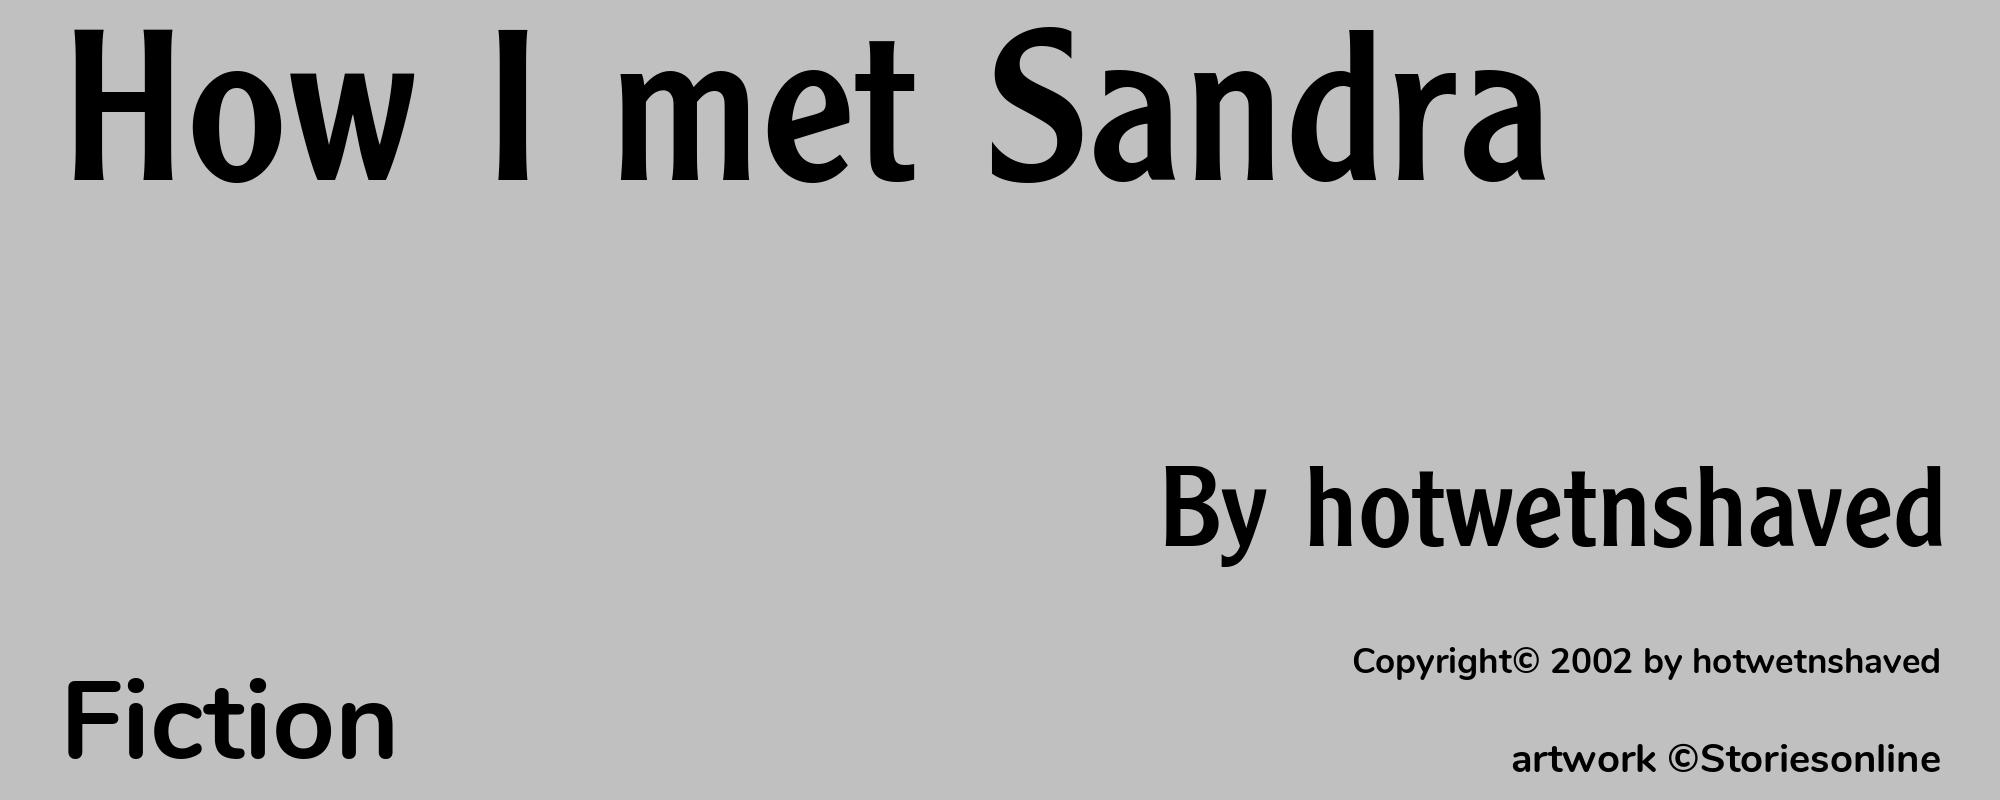 How I met Sandra - Cover